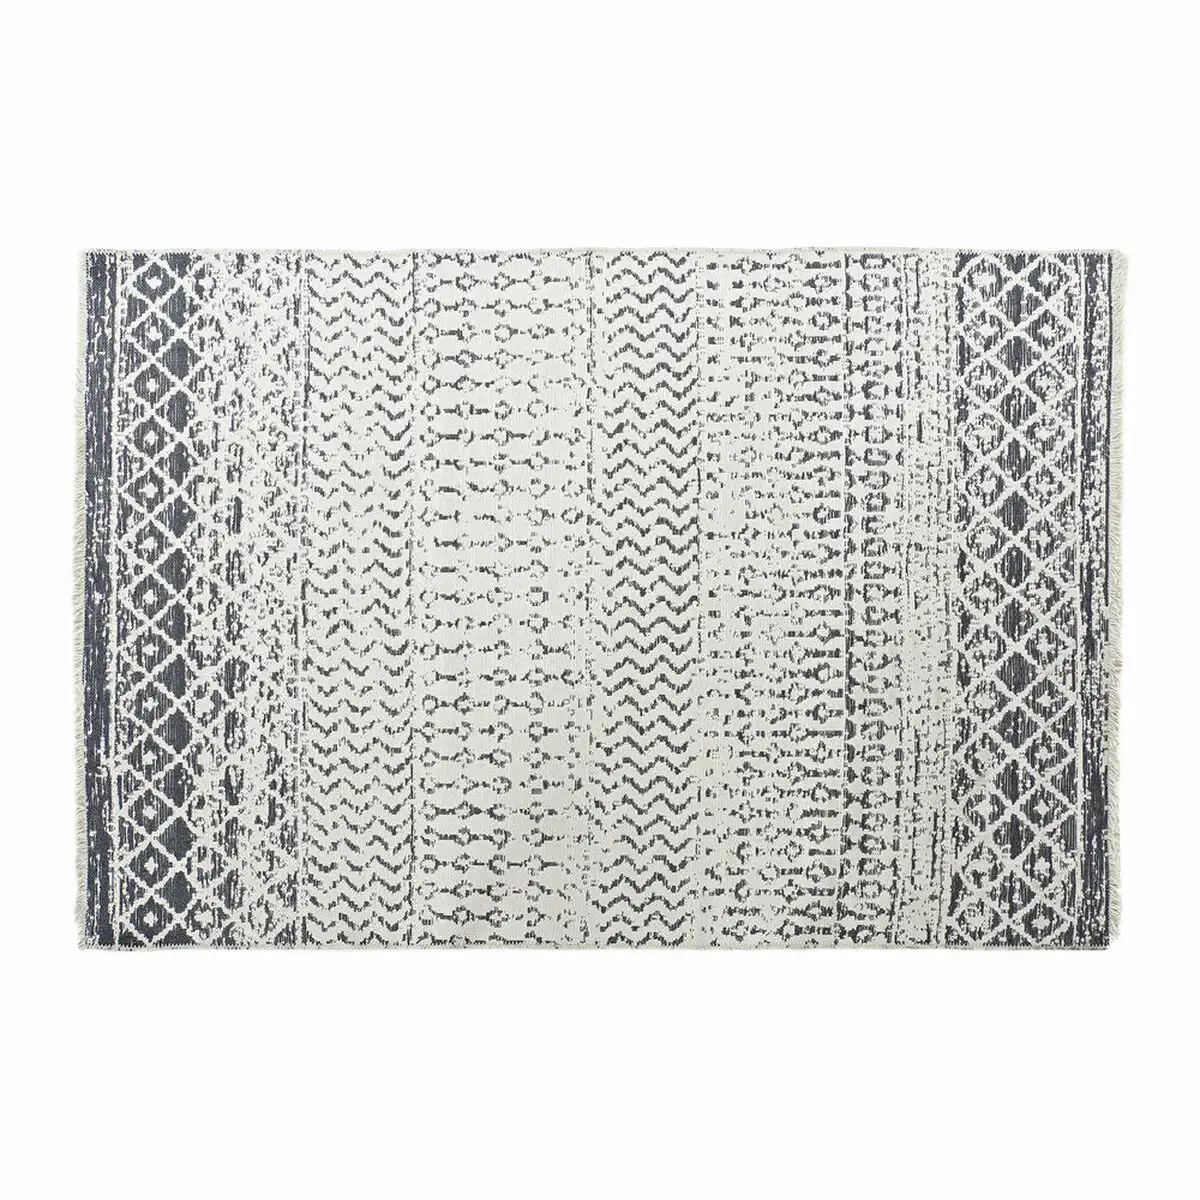 Tapis dkd home decor blanc gris polyester coton 160 x 230 x 1 cm _6225. DIAYTAR SENEGAL - Votre Passage vers l'Élégance Abordable. Explorez notre collection où chaque produit est choisi pour sa qualité et son accessibilité, incarnant ainsi l'essence du Sénégal.